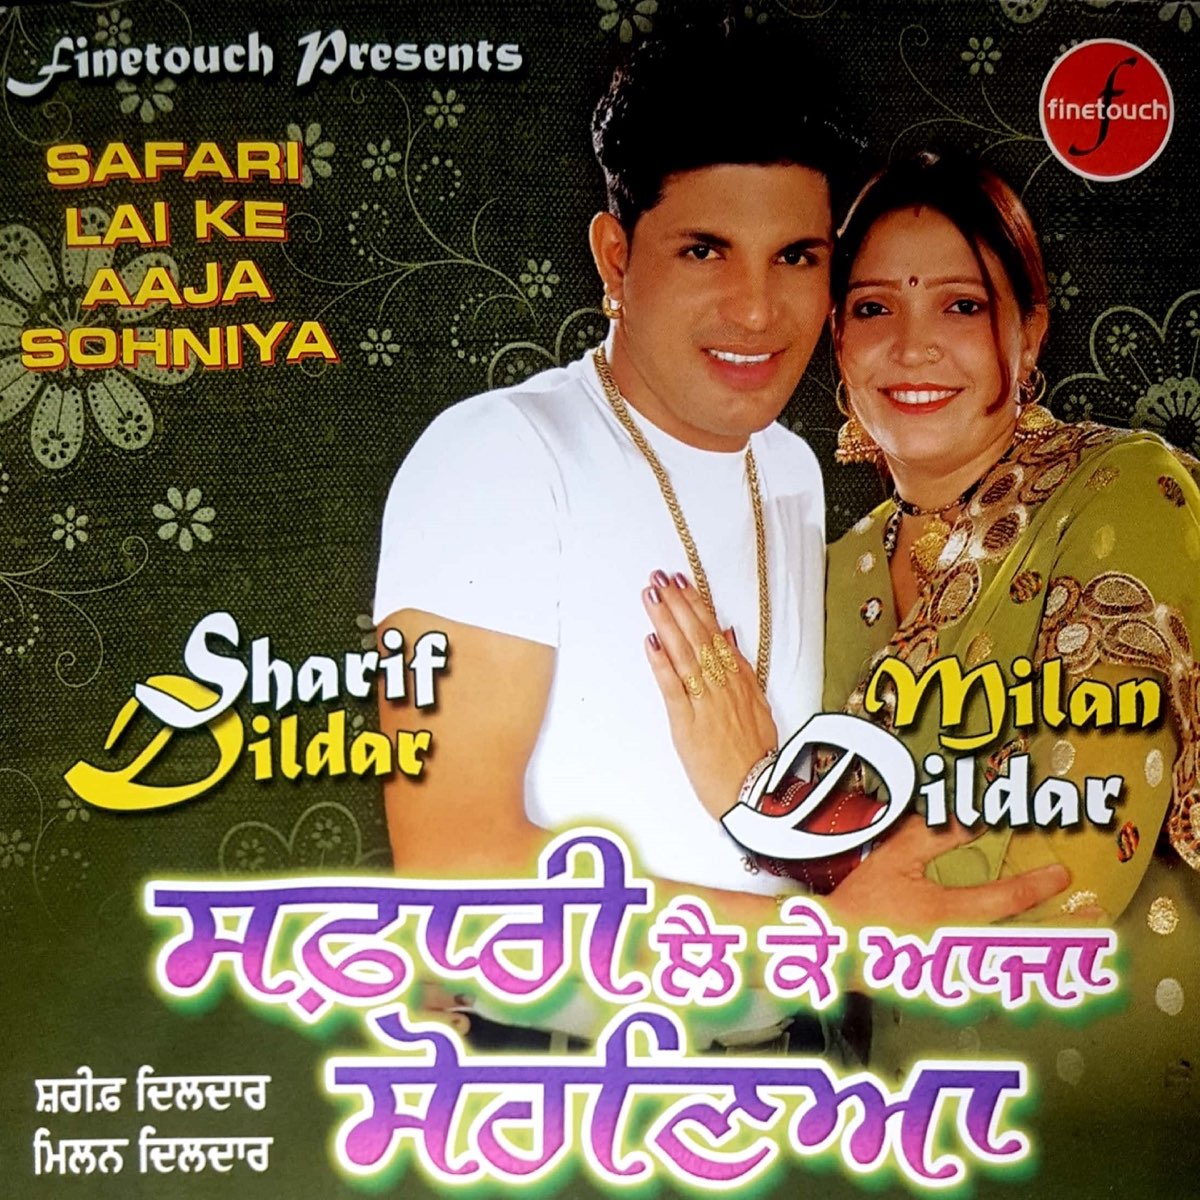 sharif dildar safari song download